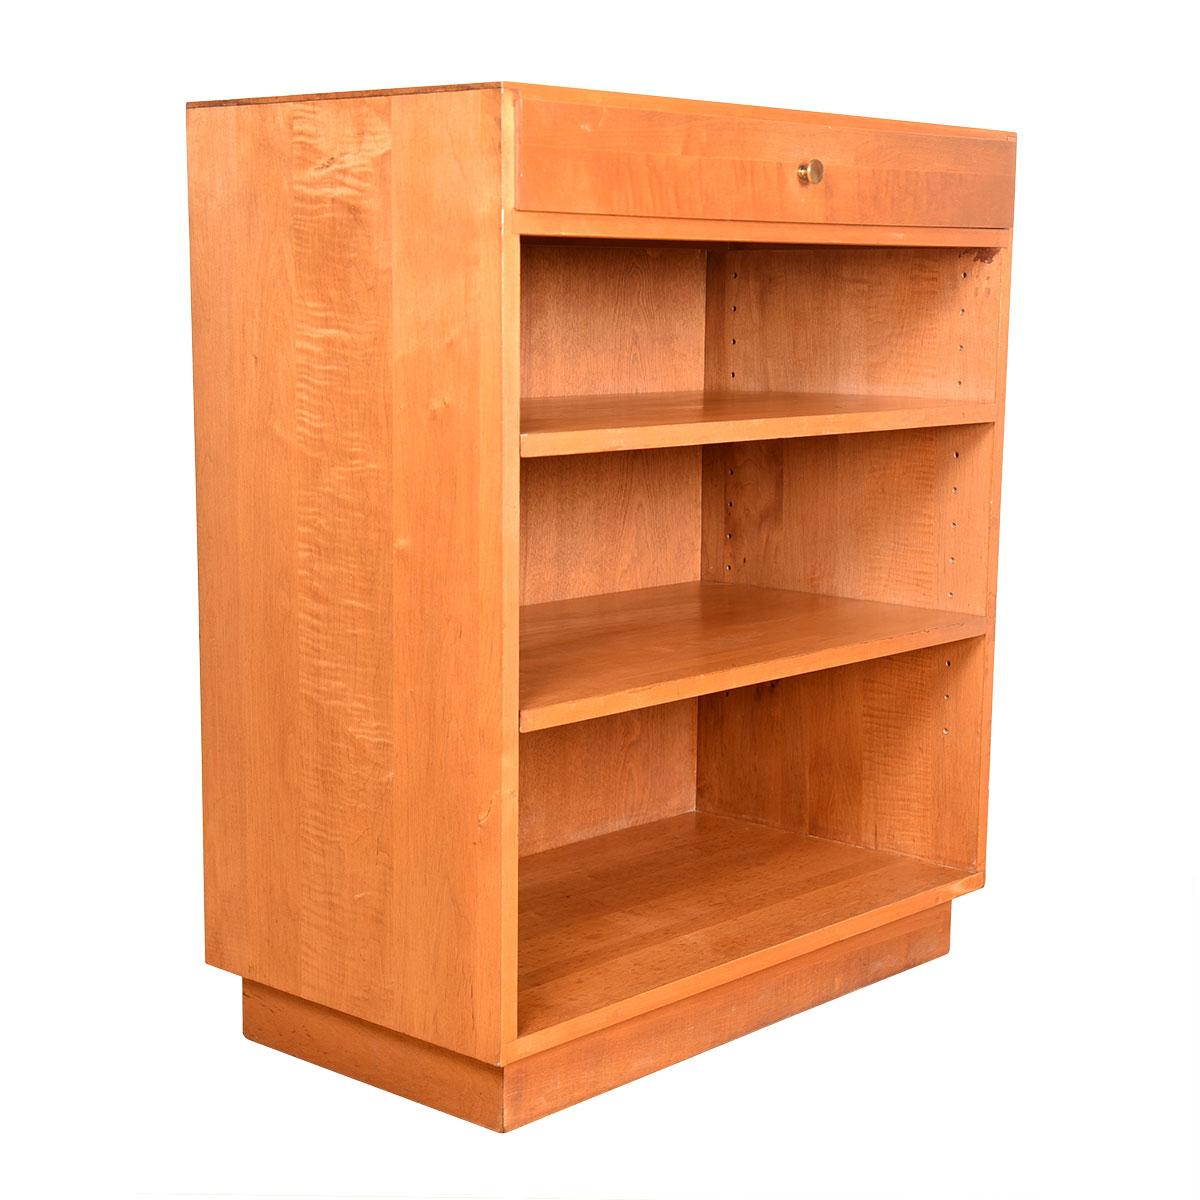 Tolles Bücherregal von Paul McCobb mit Schublade oben.
Wunderbare Größe mit guter Speicherkapazität auf kleinem Raum.

